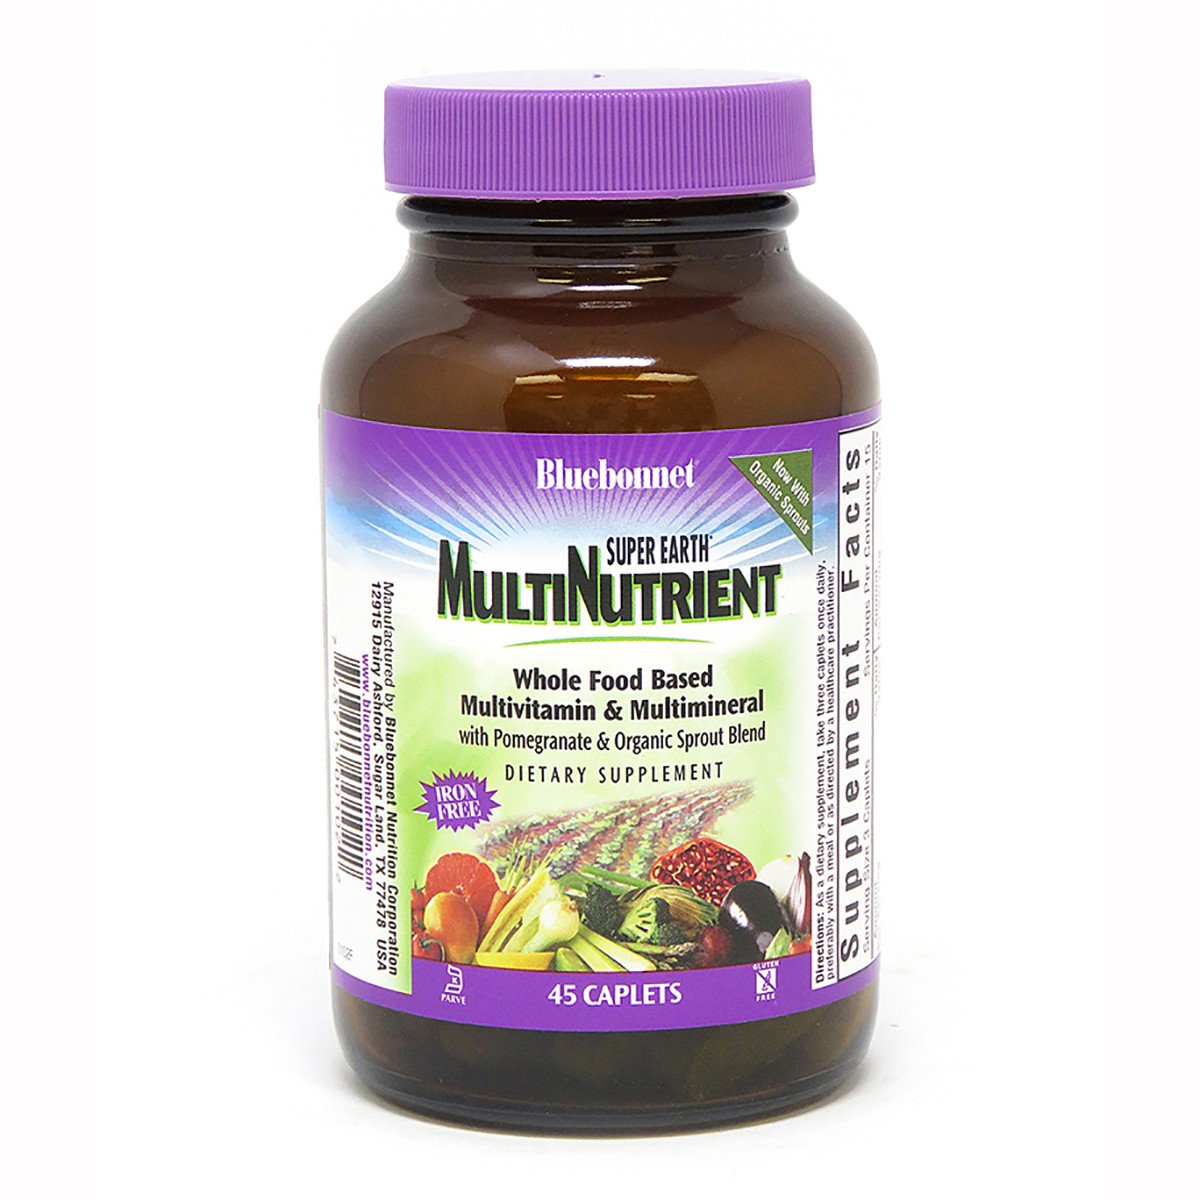 Супер Мультивитамины без Железа, Bluebonnet Nutrition, 45 каплет,  мл, Bluebonnet Nutrition. Витаминно-минеральный комплекс. Поддержание здоровья Укрепление иммунитета 